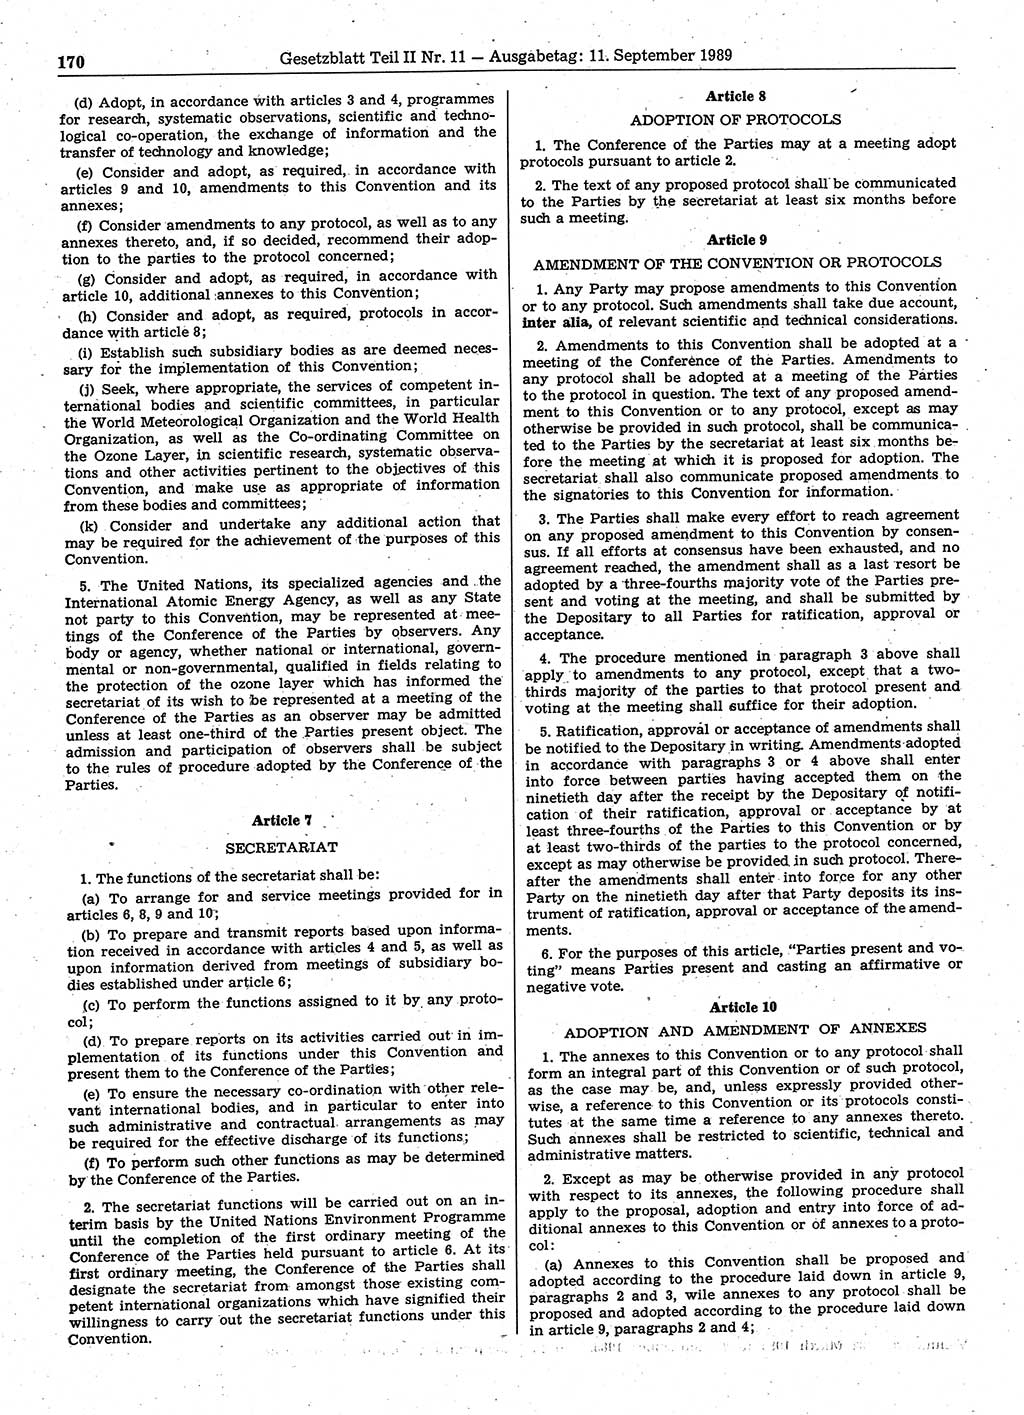 Gesetzblatt (GBl.) der Deutschen Demokratischen Republik (DDR) Teil ⅠⅠ 1989, Seite 170 (GBl. DDR ⅠⅠ 1989, S. 170)